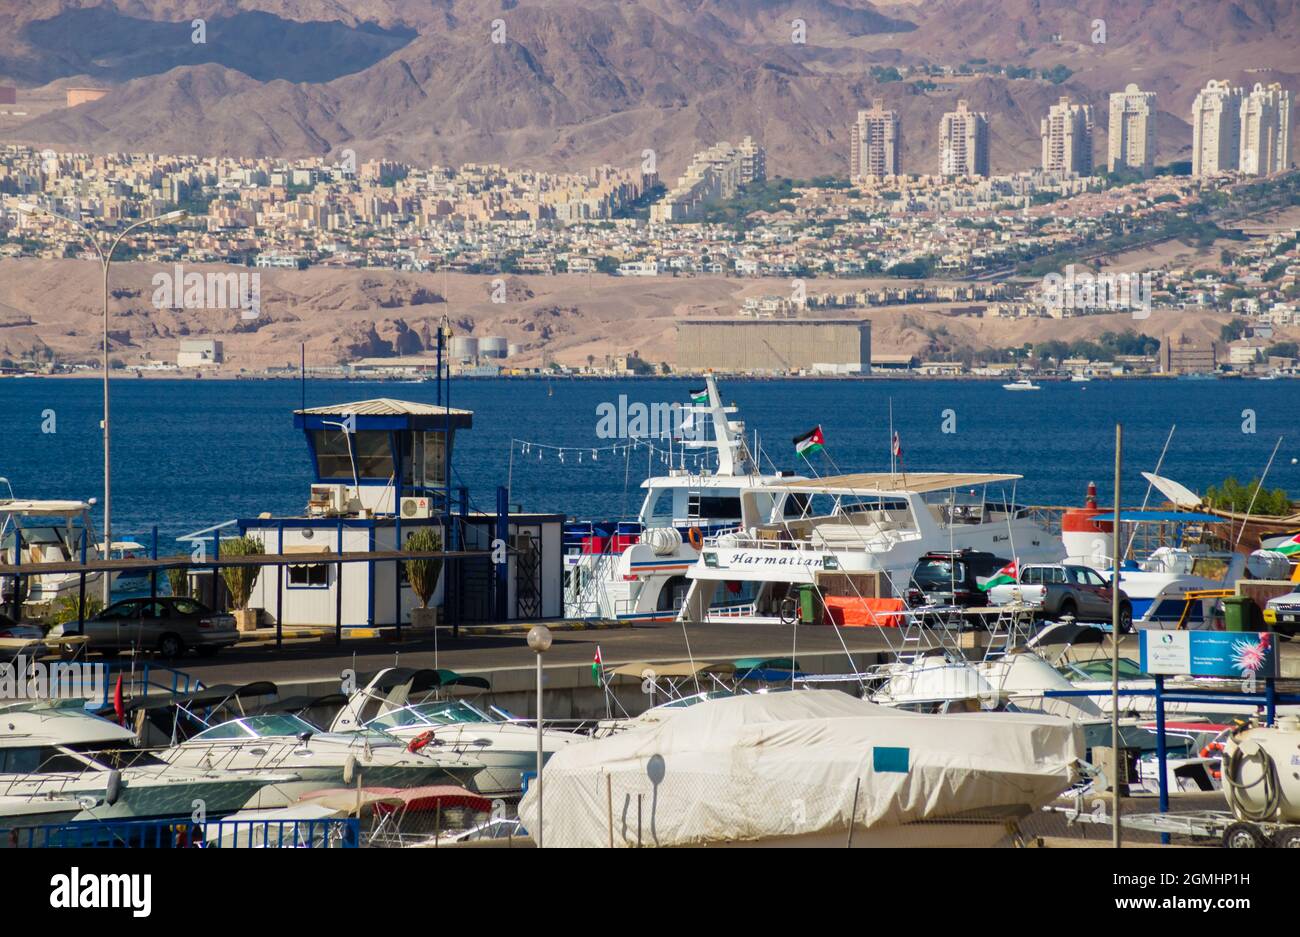 AQABA, GIORDANIA - 6 NOVEMBRE: Una vista attraverso il golfo di Aqaba alla trafficata città di confine israeliana Eilat al Mar Rosso, una popolare destinazione turistica. Novembre Foto Stock